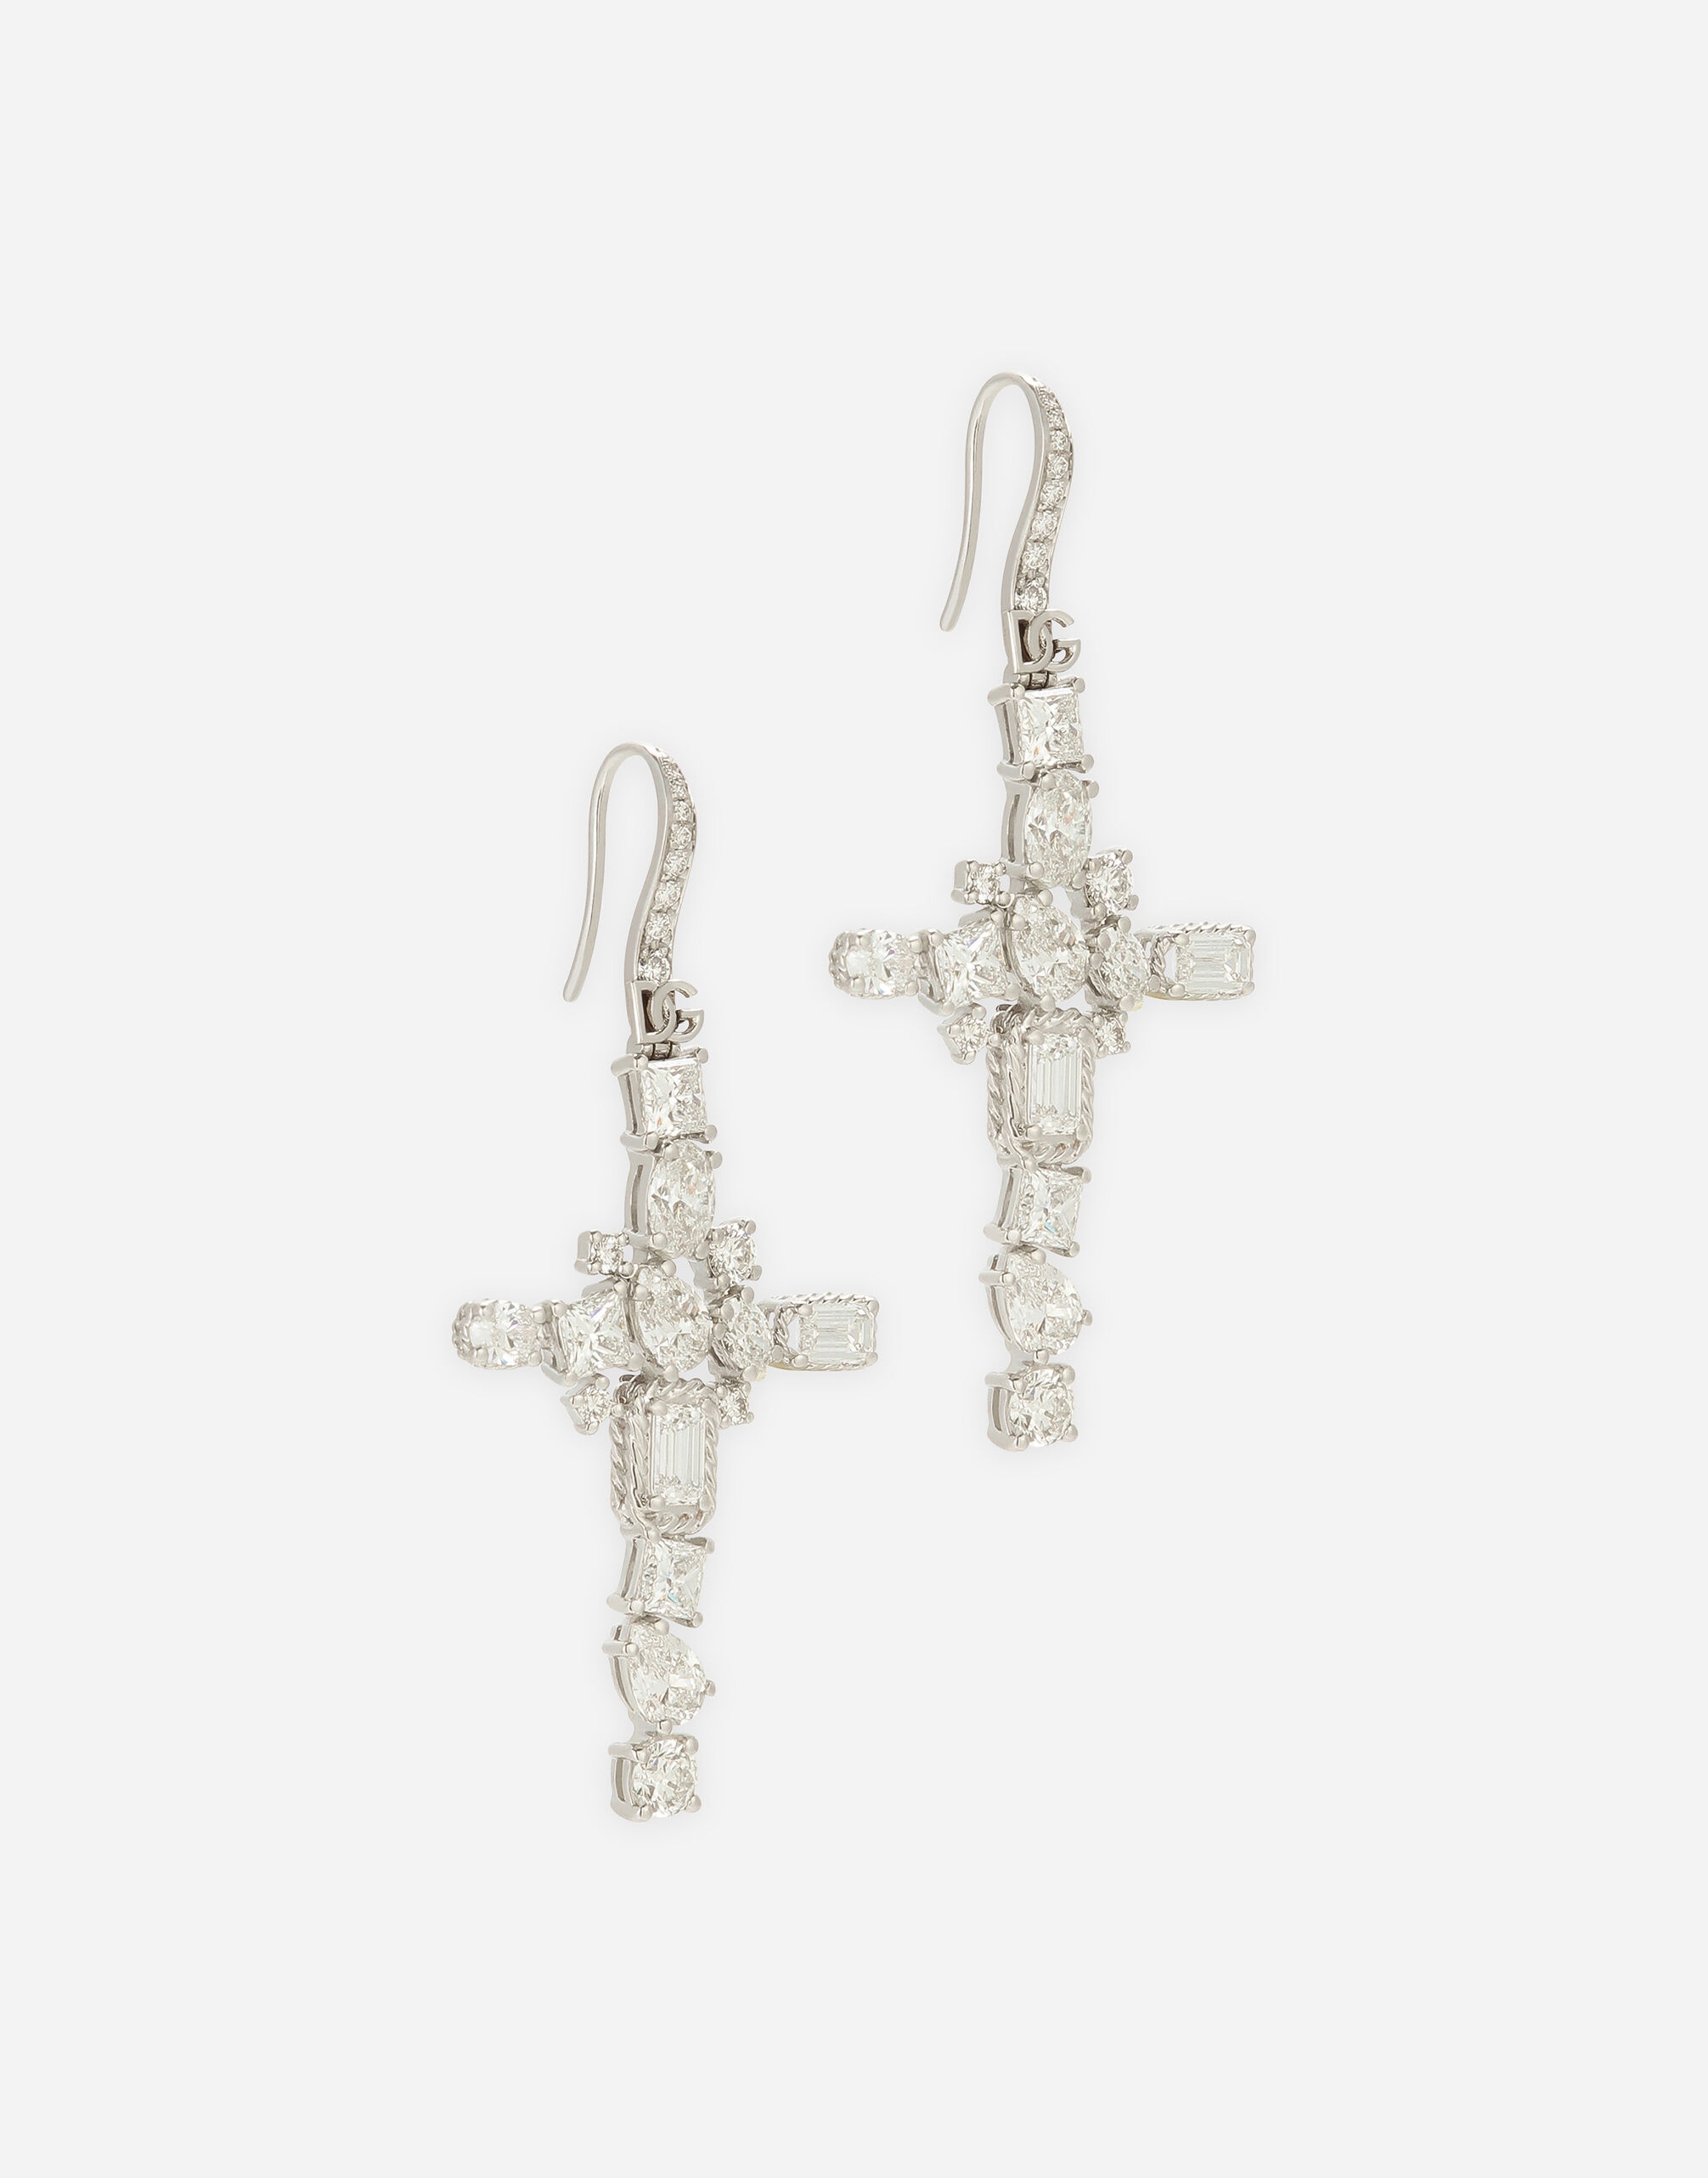 Easy Diamond earrings in white gold 18Kt diamonds - 3